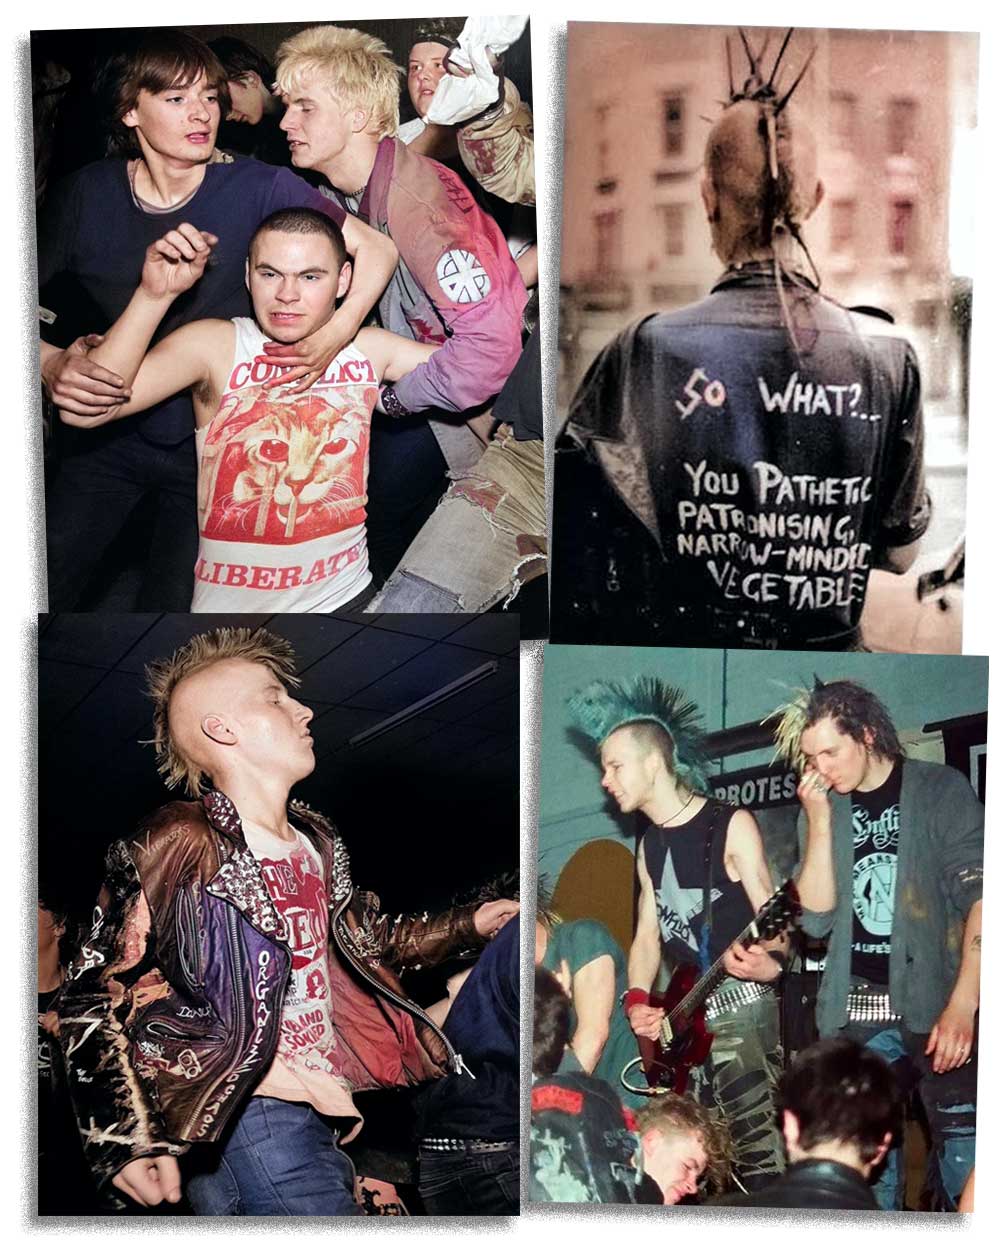 80s Anarcho-Punk Slogan fashion